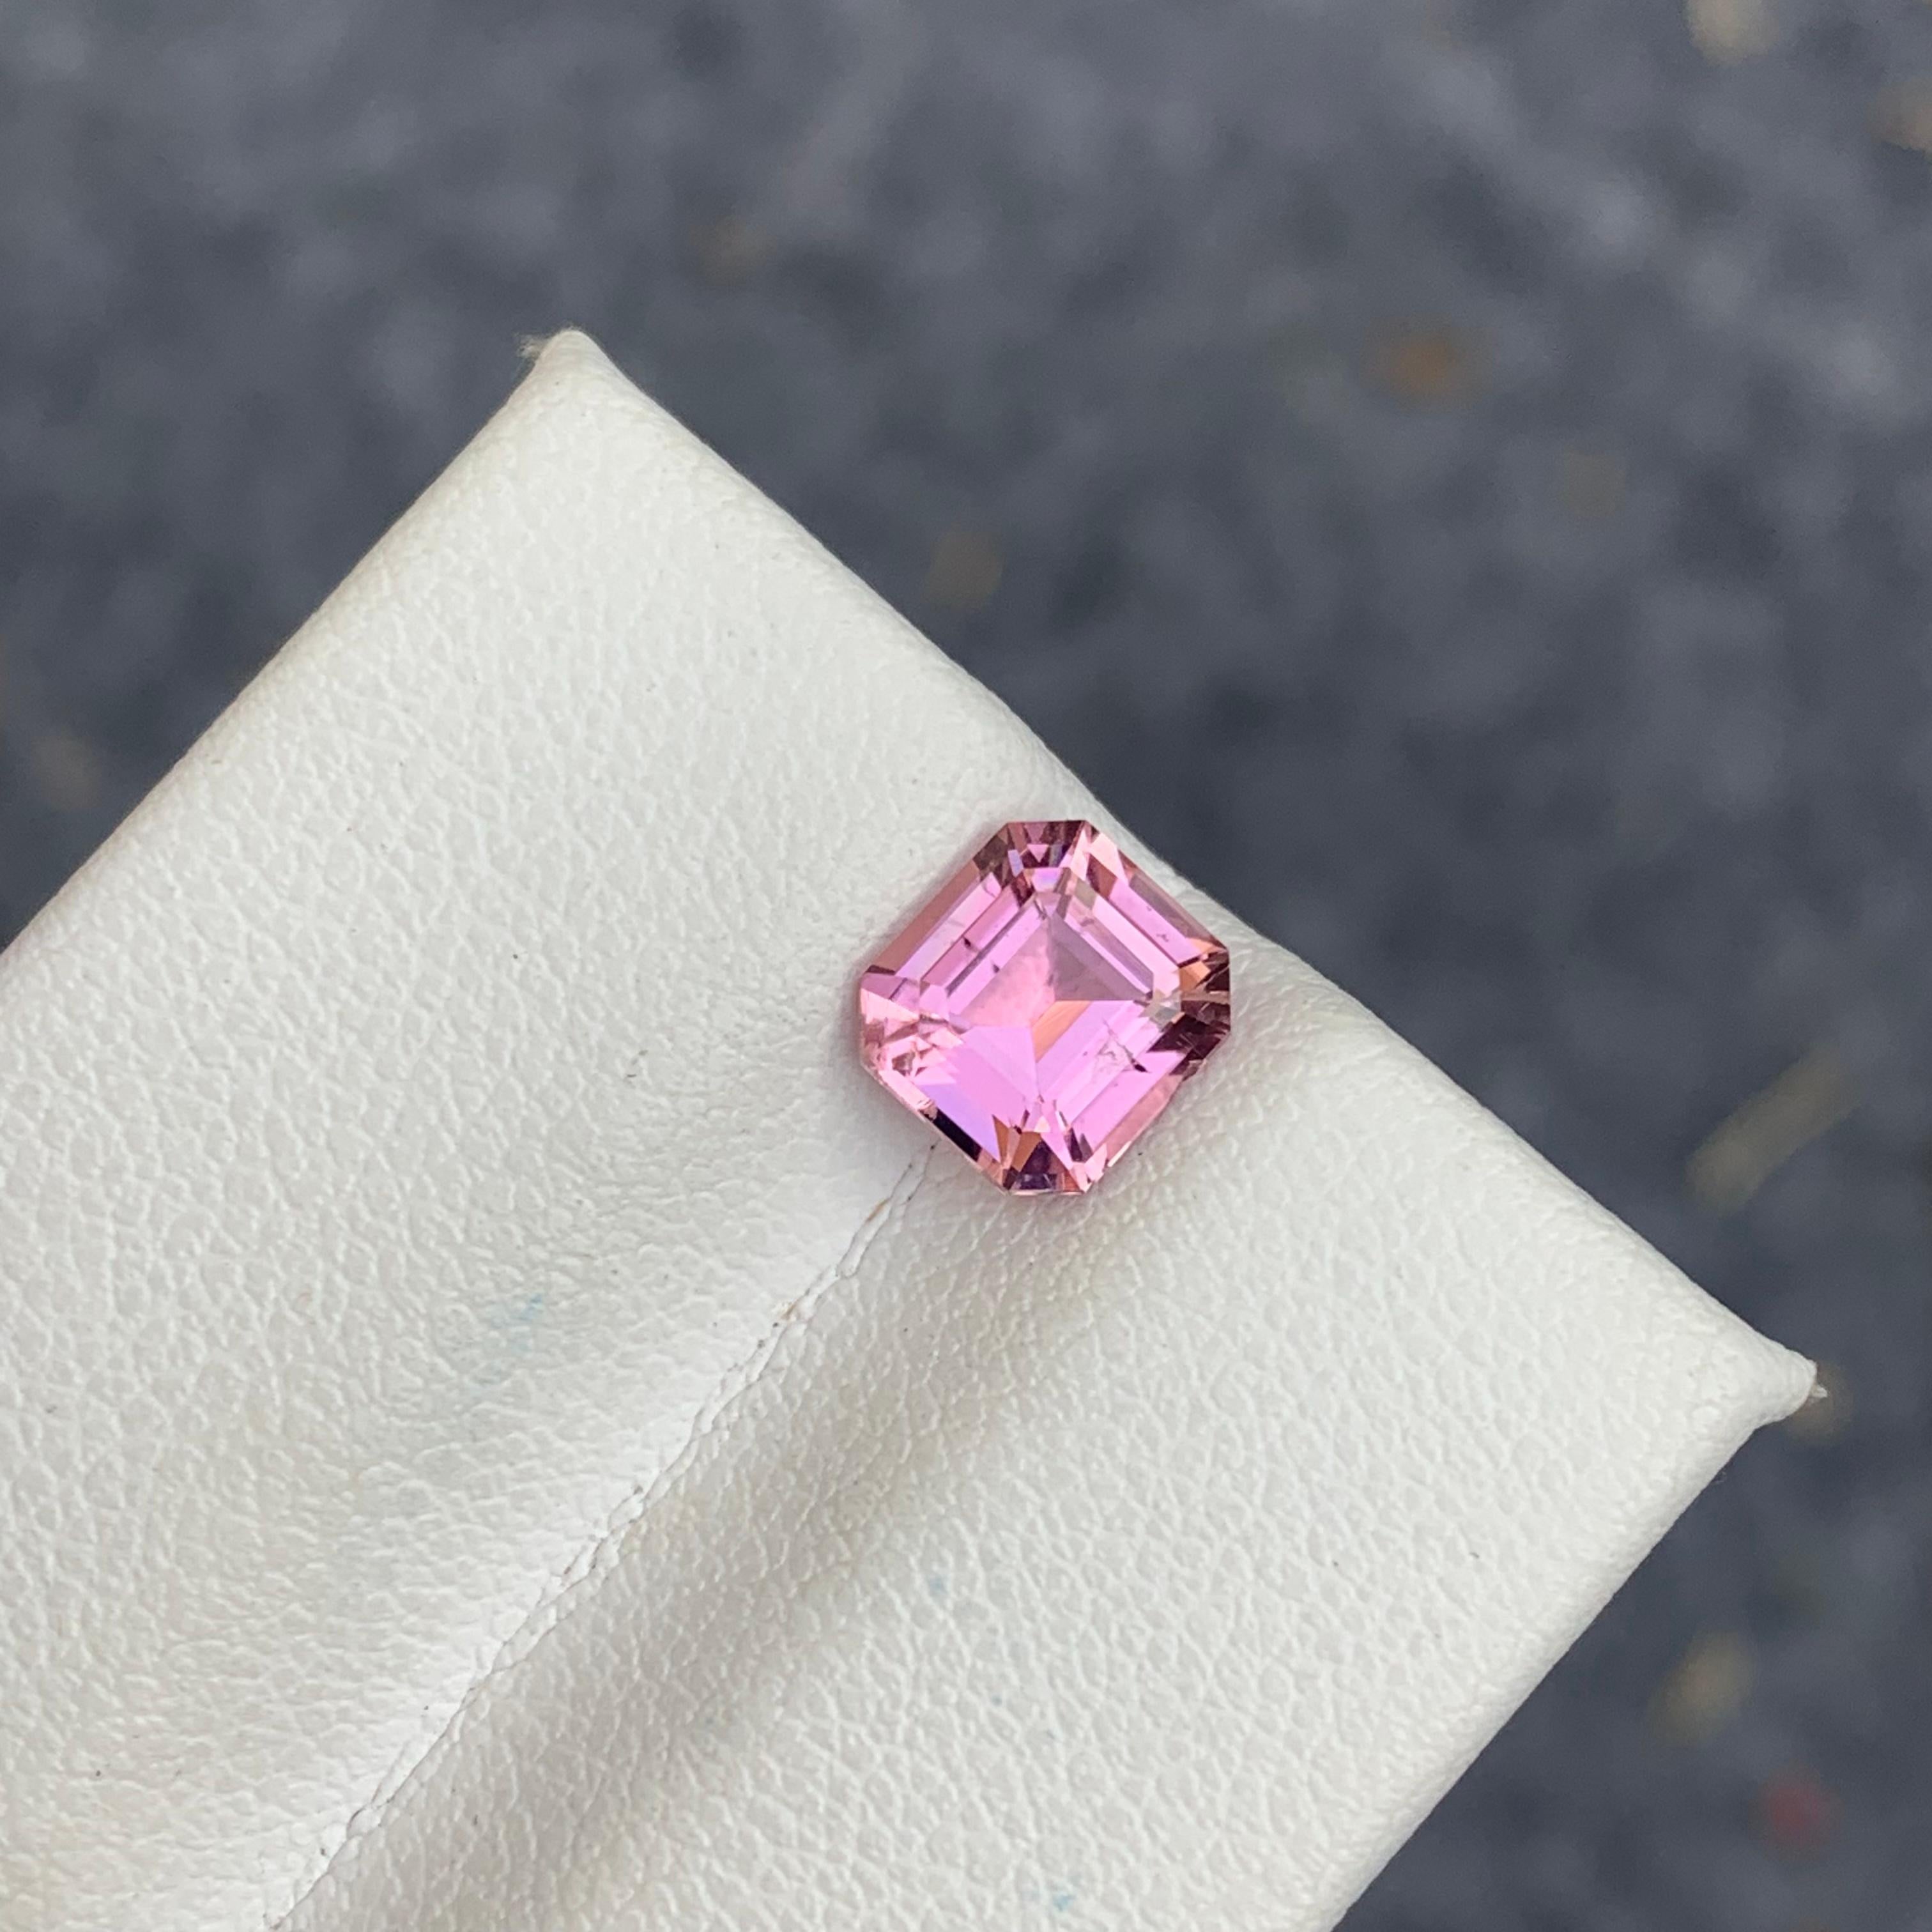 Taille émeraude Pierre précieuse tourmaline rose pâle naturelle non sertie de 1,50 carat provenant d'une mine afghane en vente